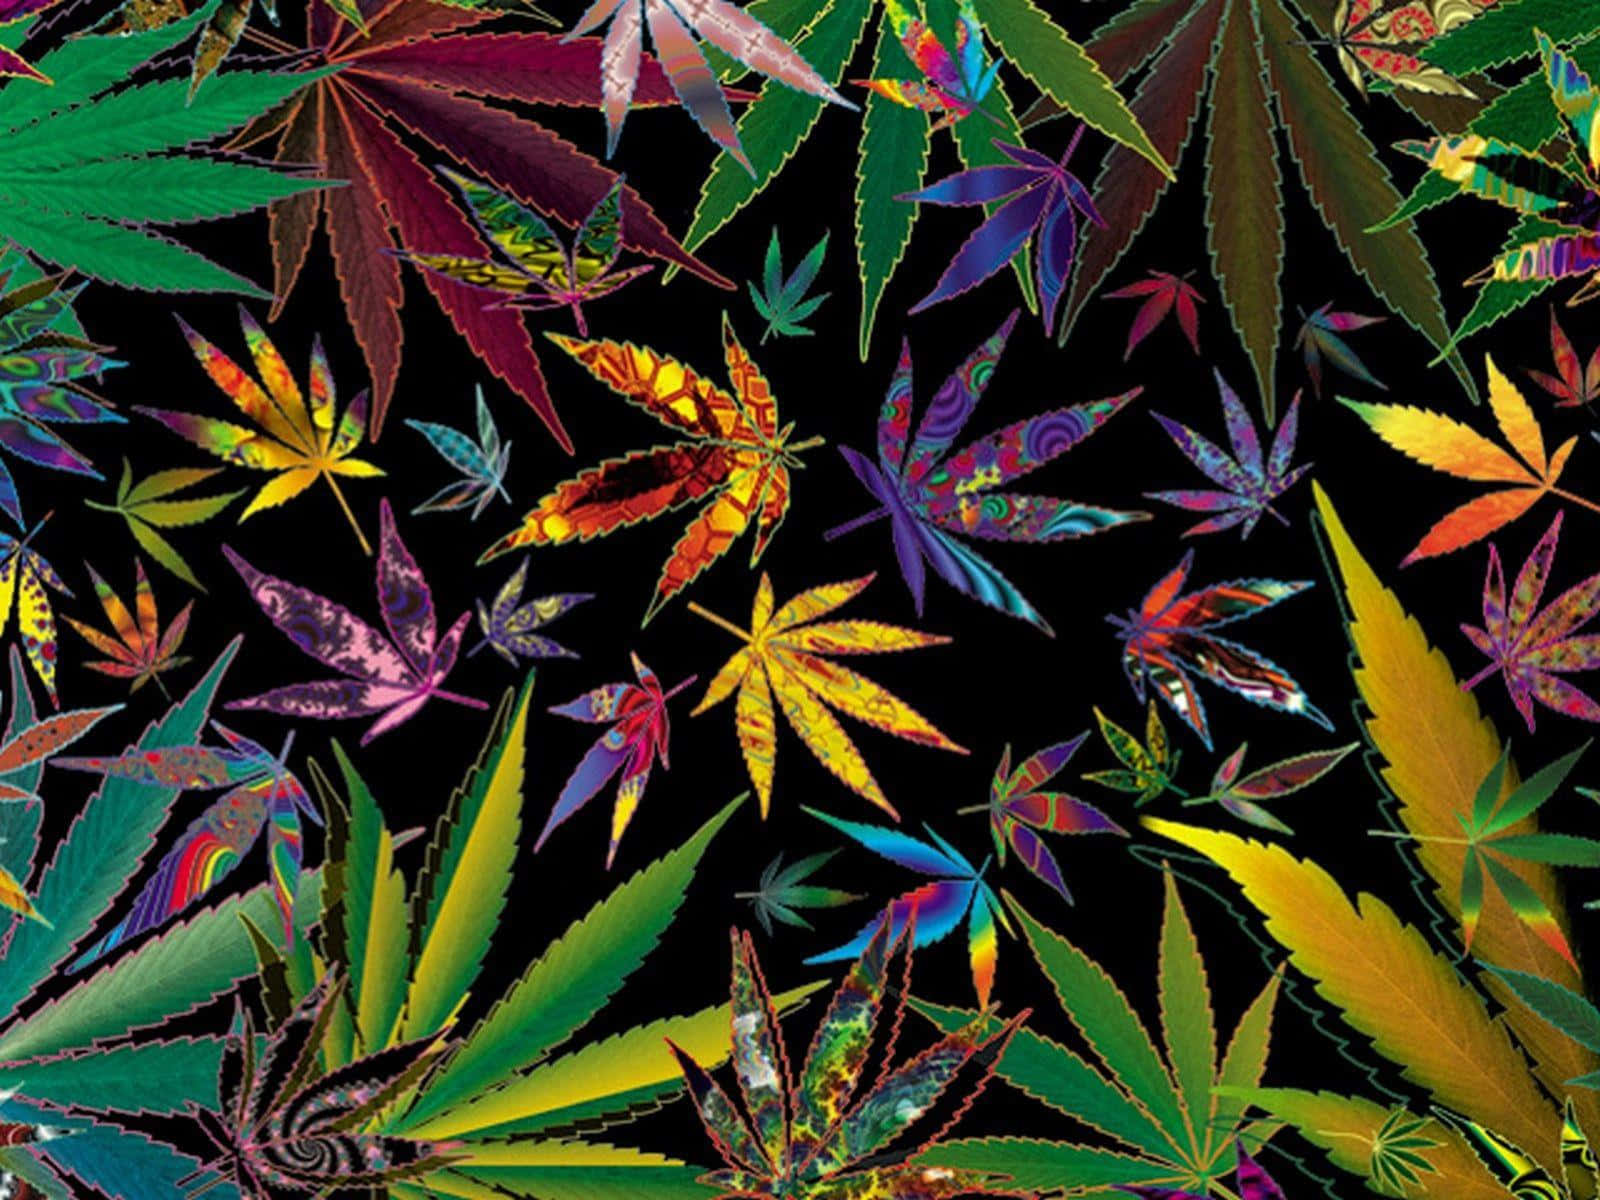 Tómateun Descanso Y Disfruta Del Éxtasis Del Cannabis.